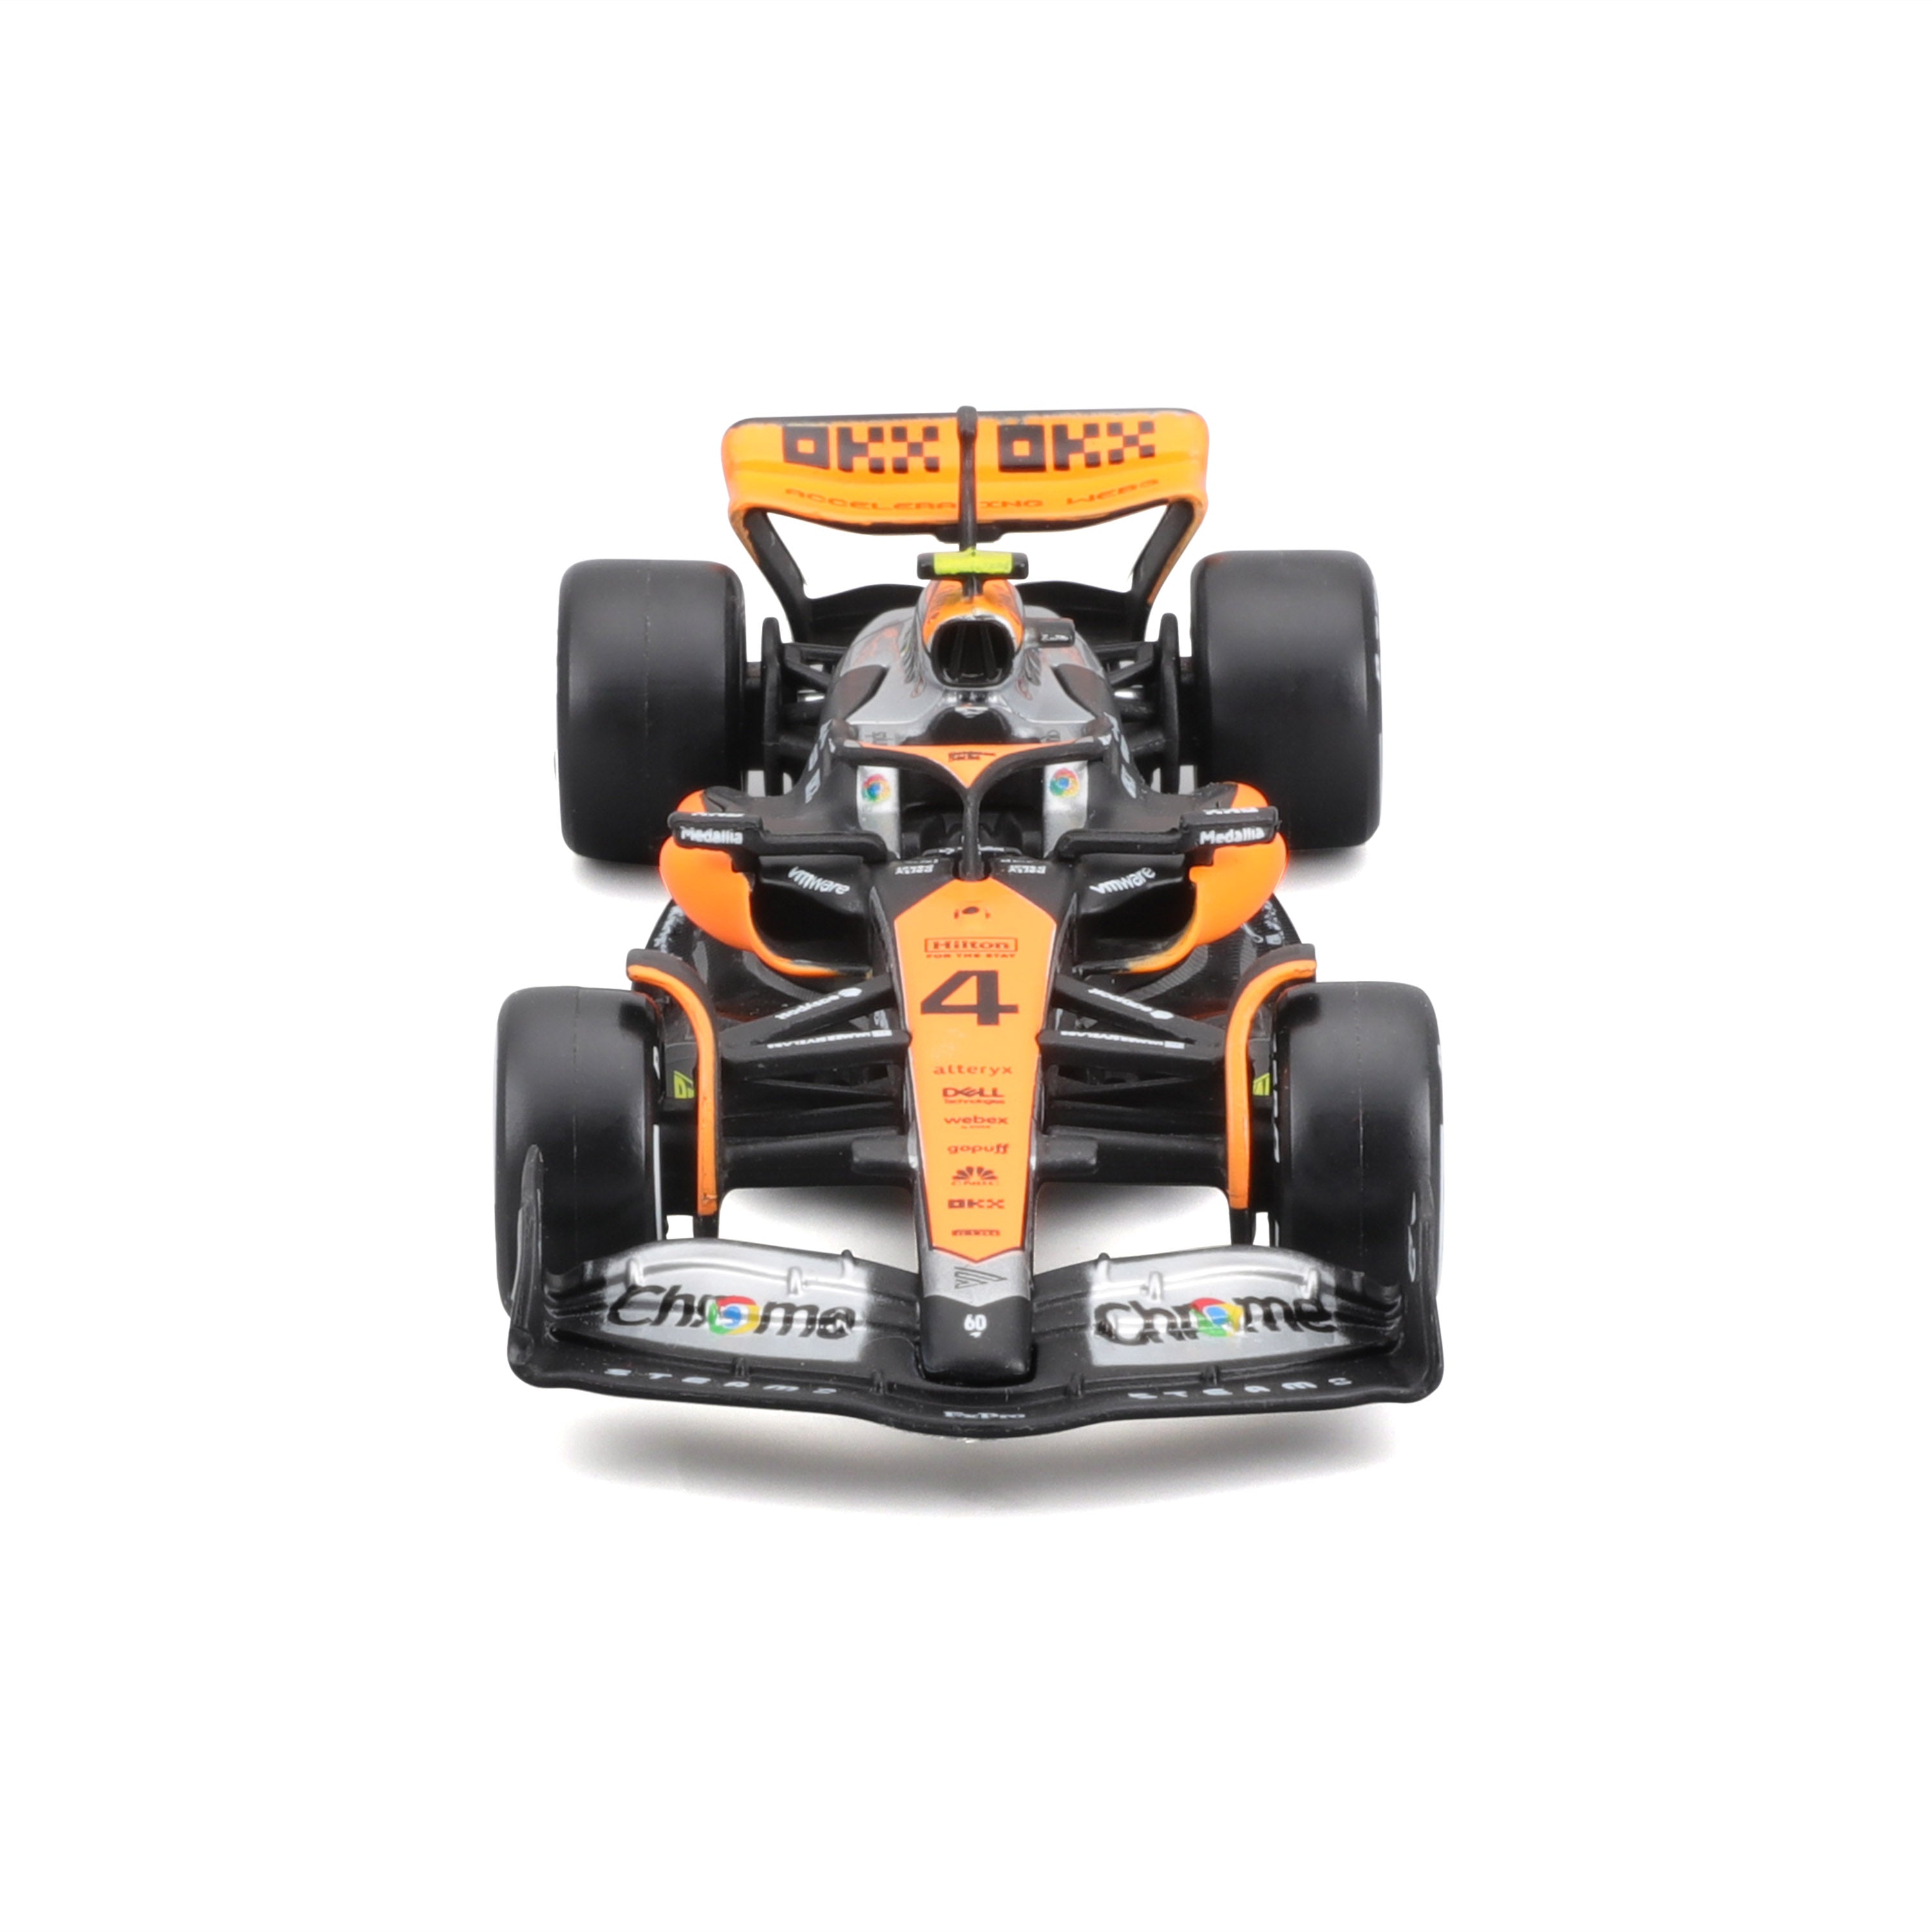 *18-38087 Bburago Race - McLaren MCL60 (2023) - #4 (Norris)